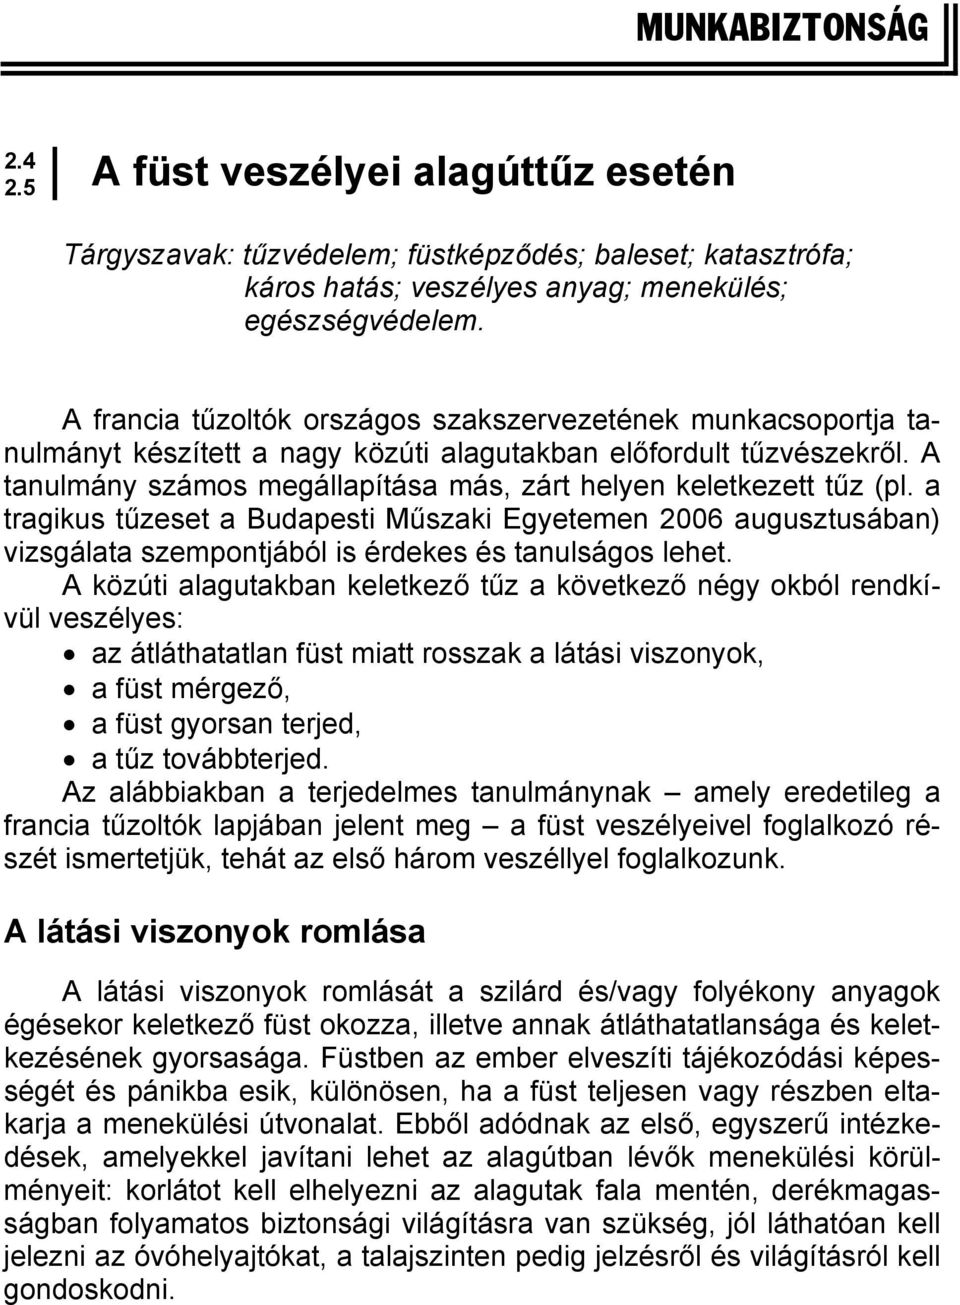 A tanulmány számos megállapítása más, zárt helyen keletkezett tűz (pl. a tragikus tűzeset a Budapesti Műszaki Egyetemen 2006 augusztusában) vizsgálata szempontjából is érdekes és tanulságos lehet.